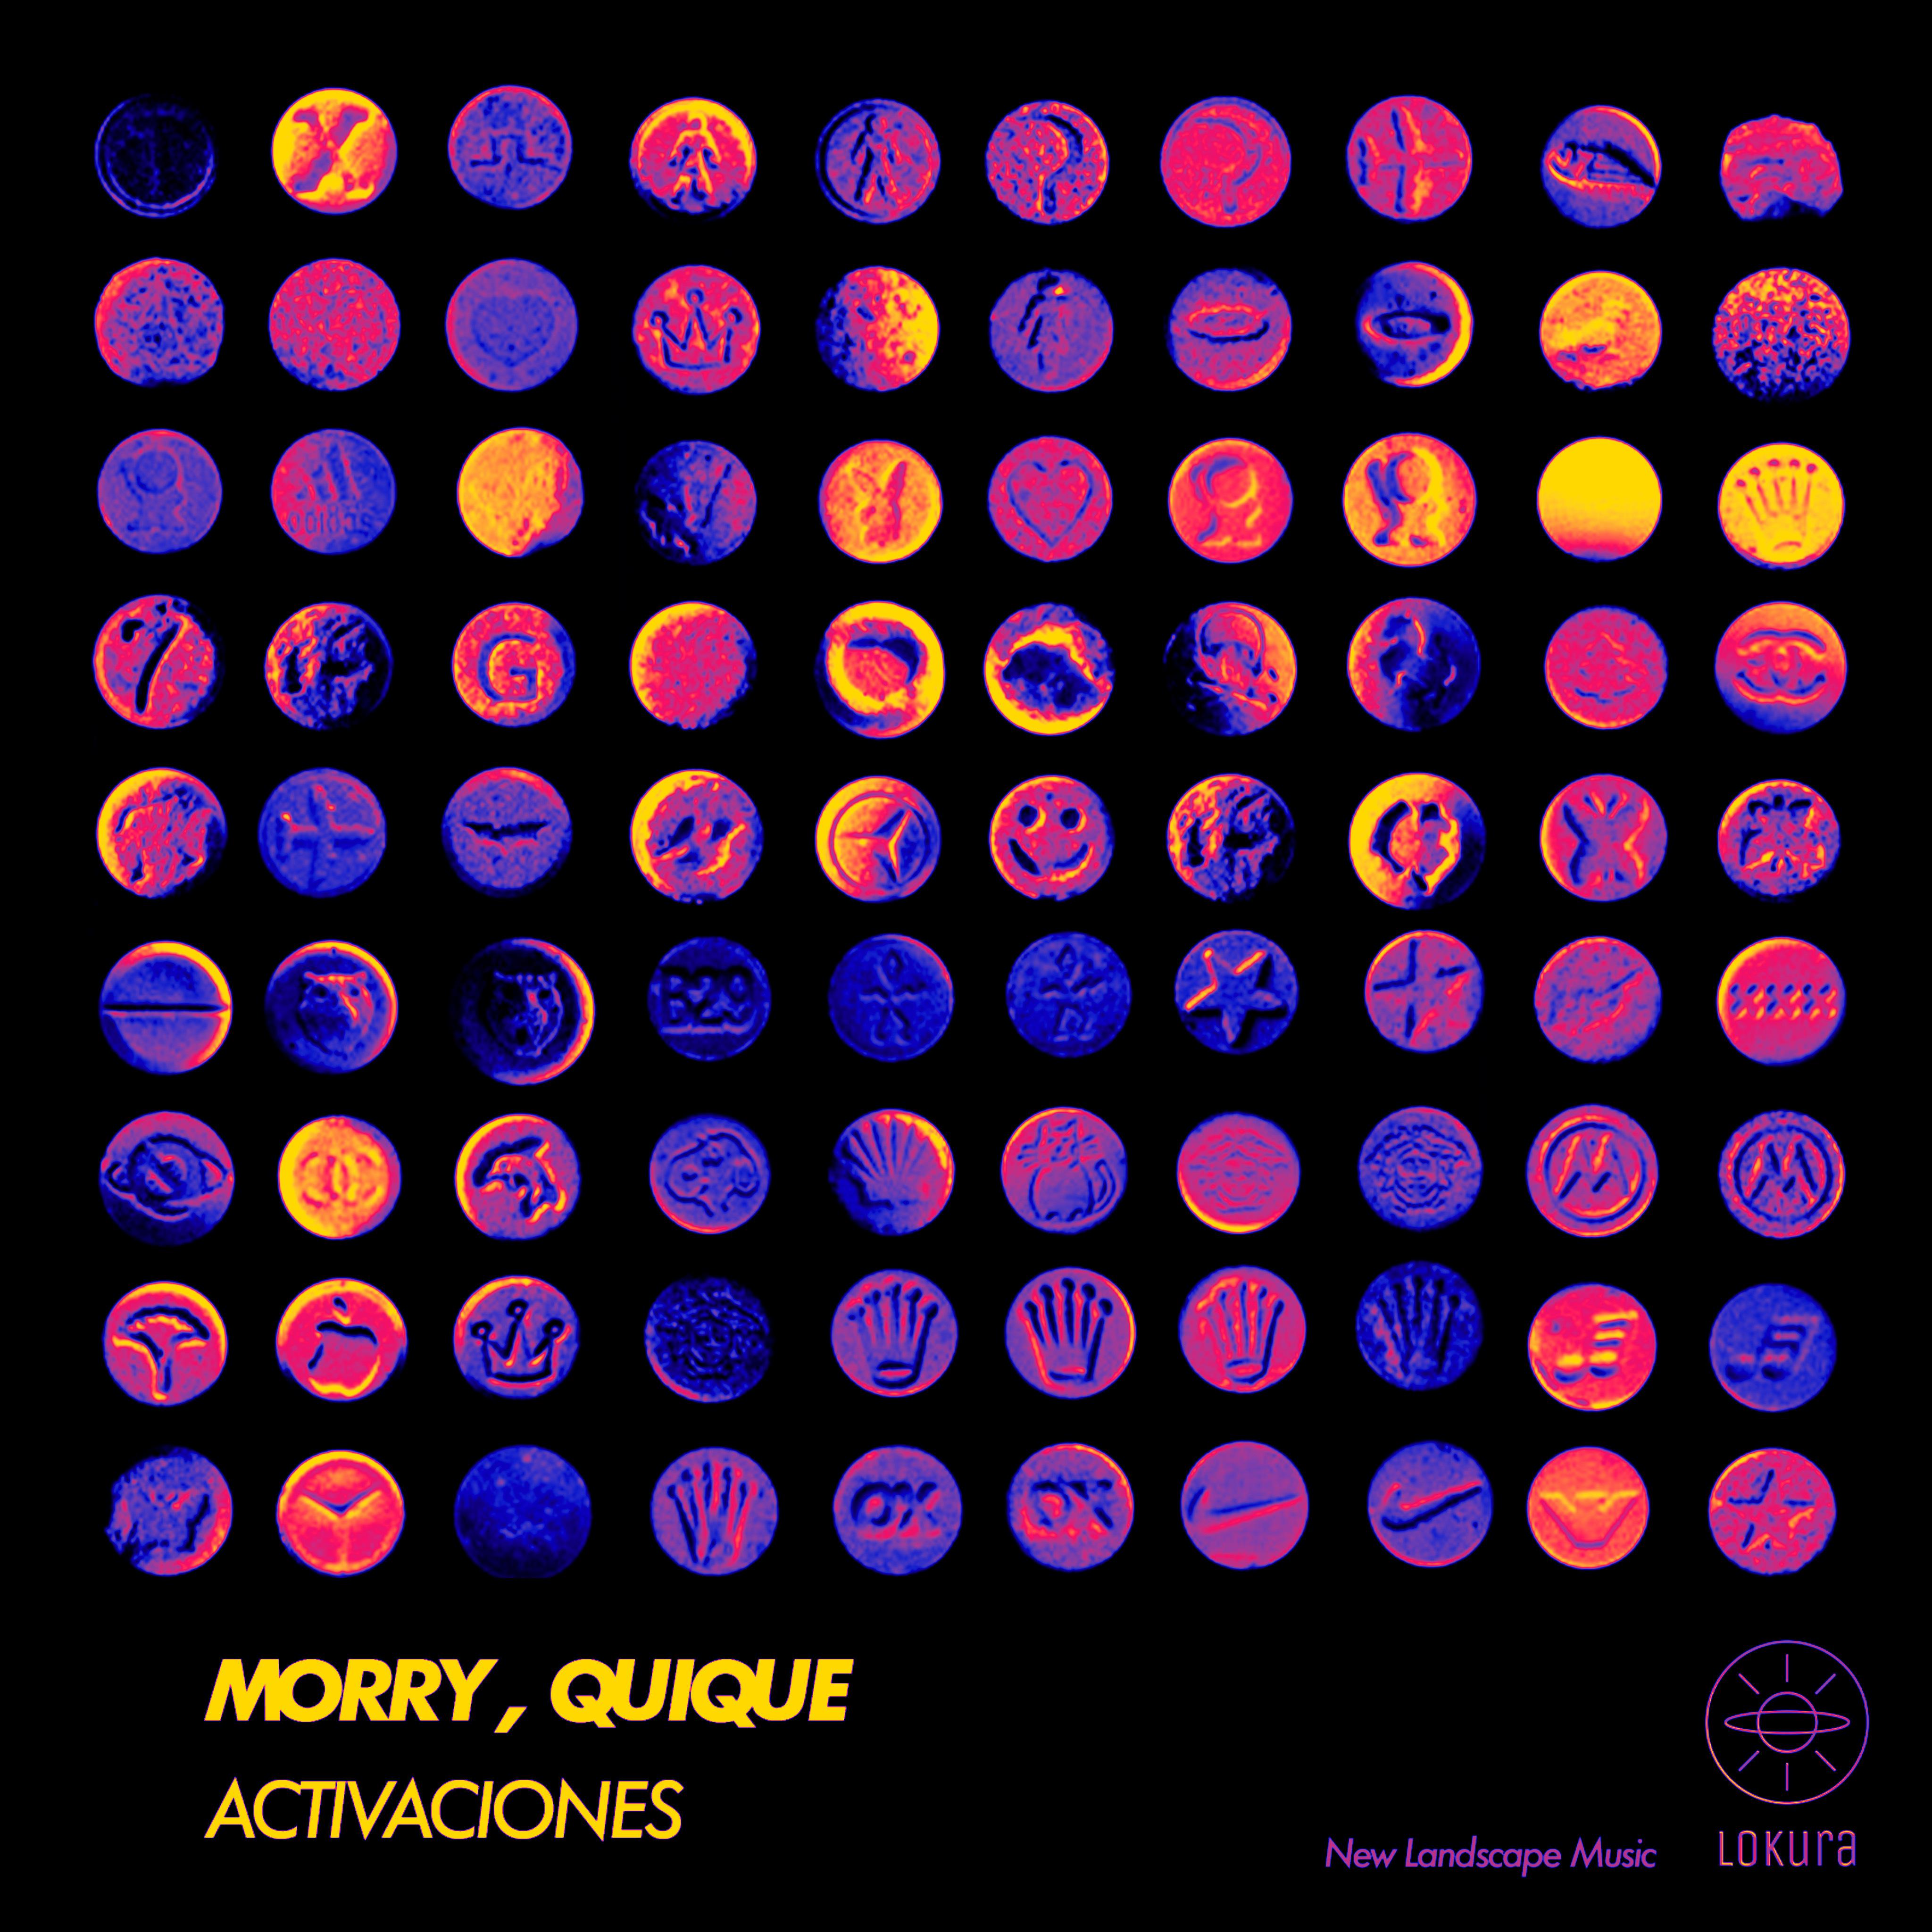 Morry - Activaciones